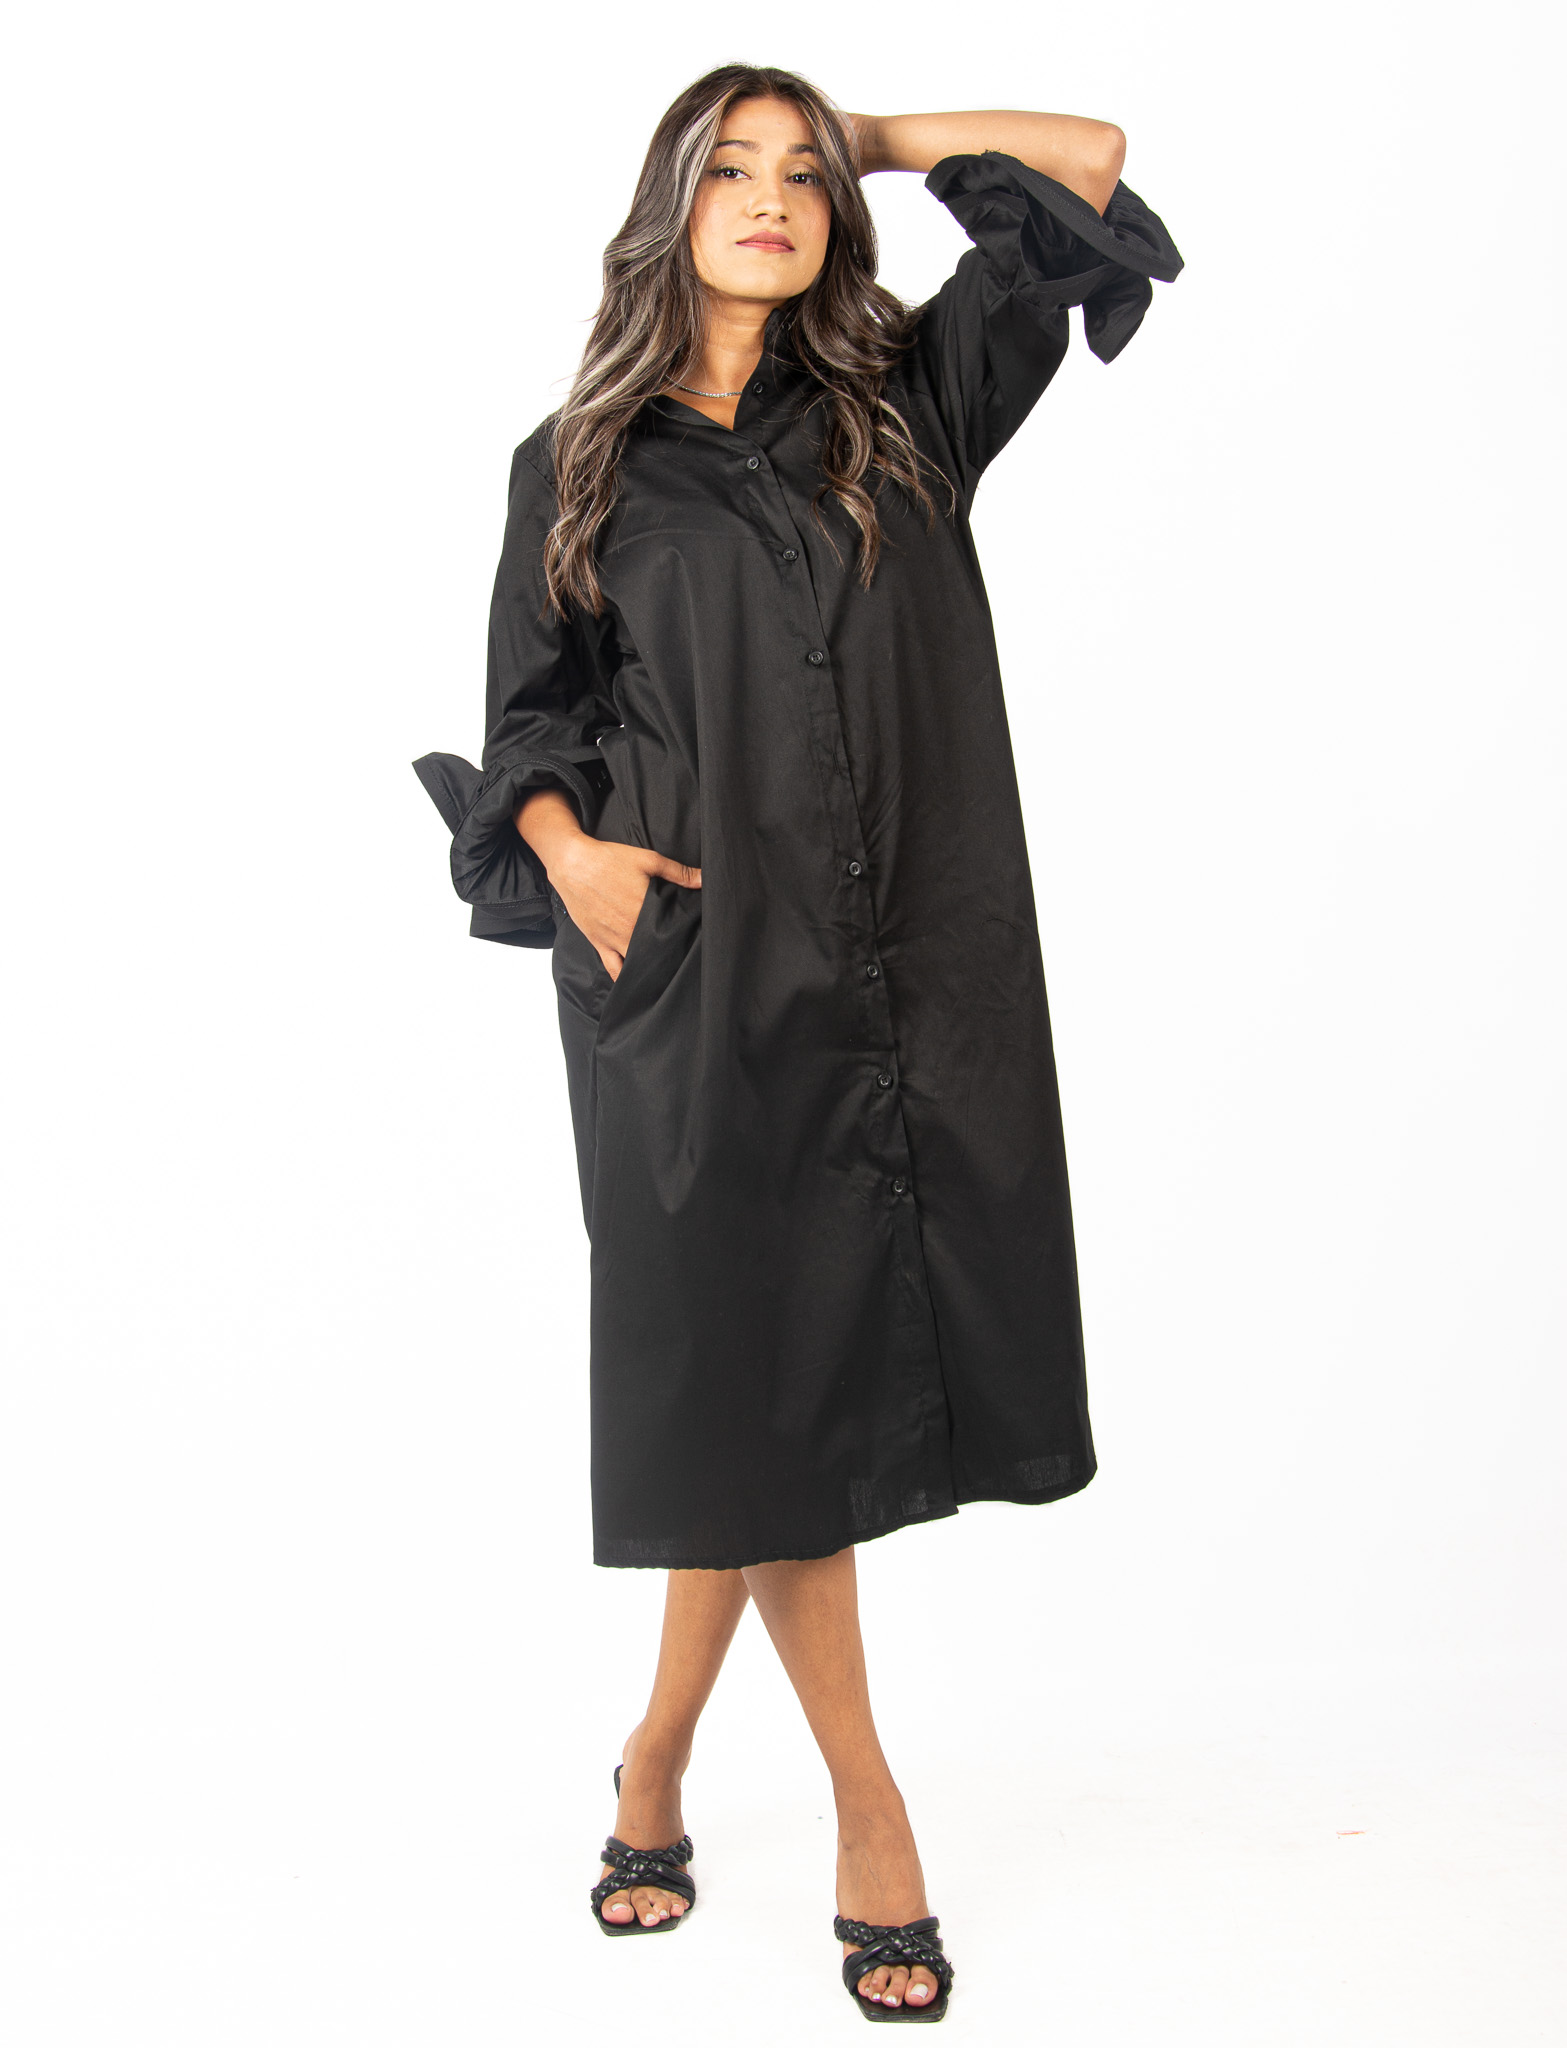 Φόρεμα Σεμιζιέ με Μπαλαρίνα Μανίκια Μαύρο | EllenBoutique